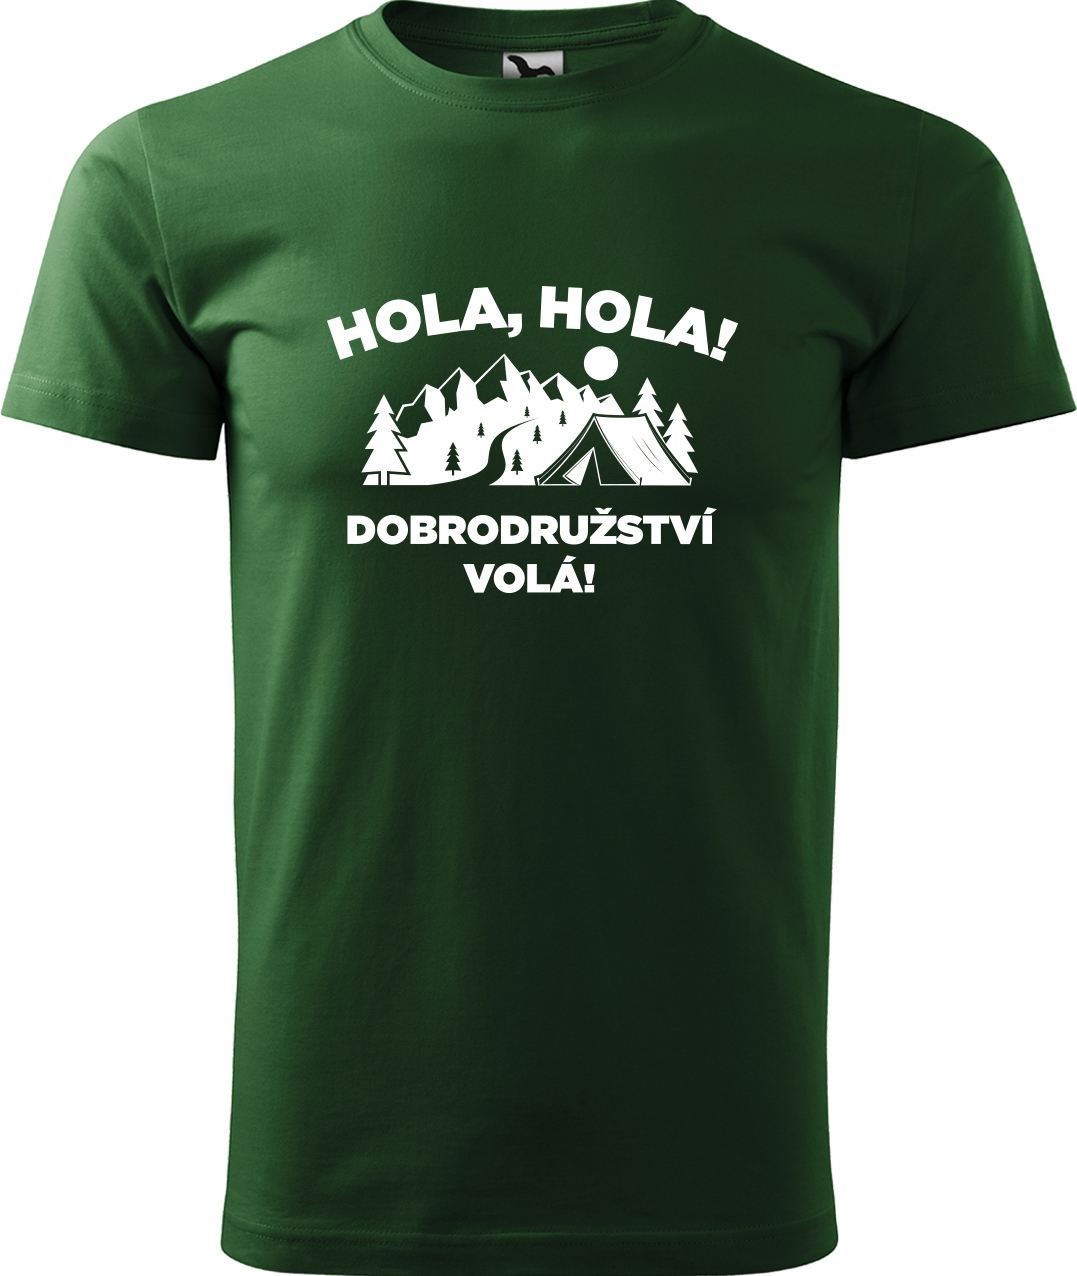 Pánské cestovatelské tričko - Hola hola! Dobrodružství volá! Velikost: L, Barva: Lahvově zelená (06), Střih: pánský